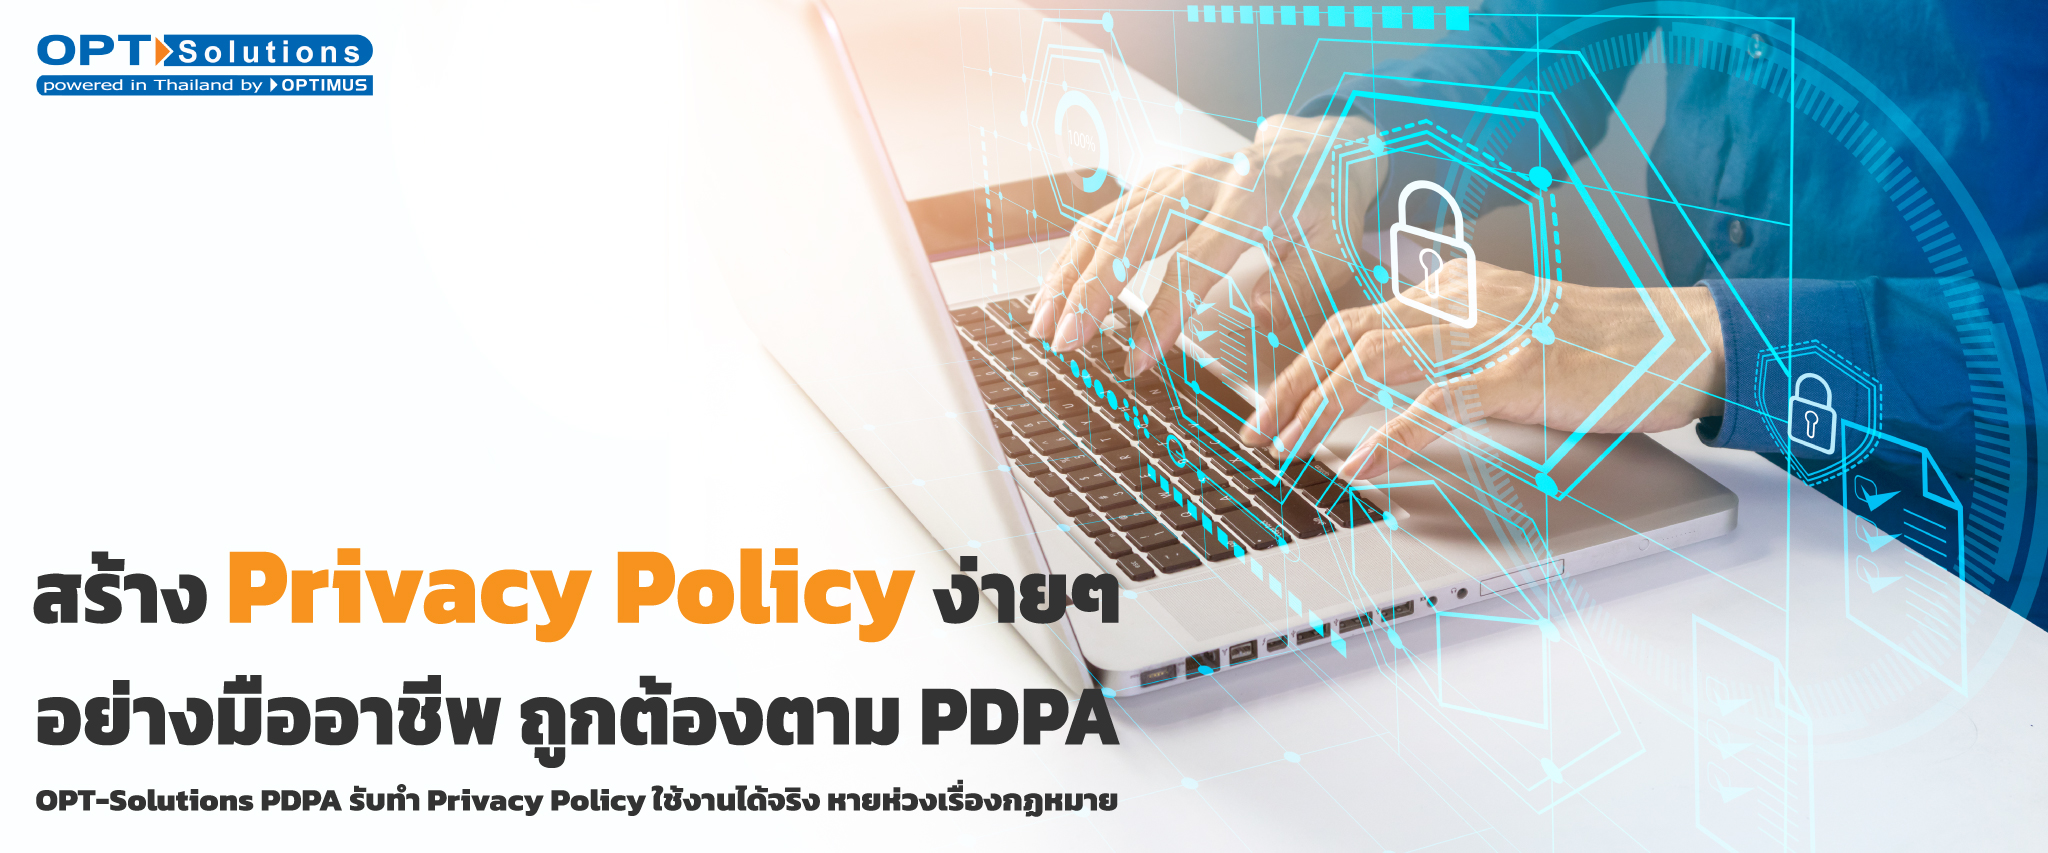 สร้าง Privacy Policy ง่ายๆ อย่างมืออาชีพ ถูกต้องตามกฎหมาย PDPA ด้วย OPT-Solutions | รับทำ Privacy Policy ใช้งานได้จริง หายห่วงเรื่องกฎหมาย